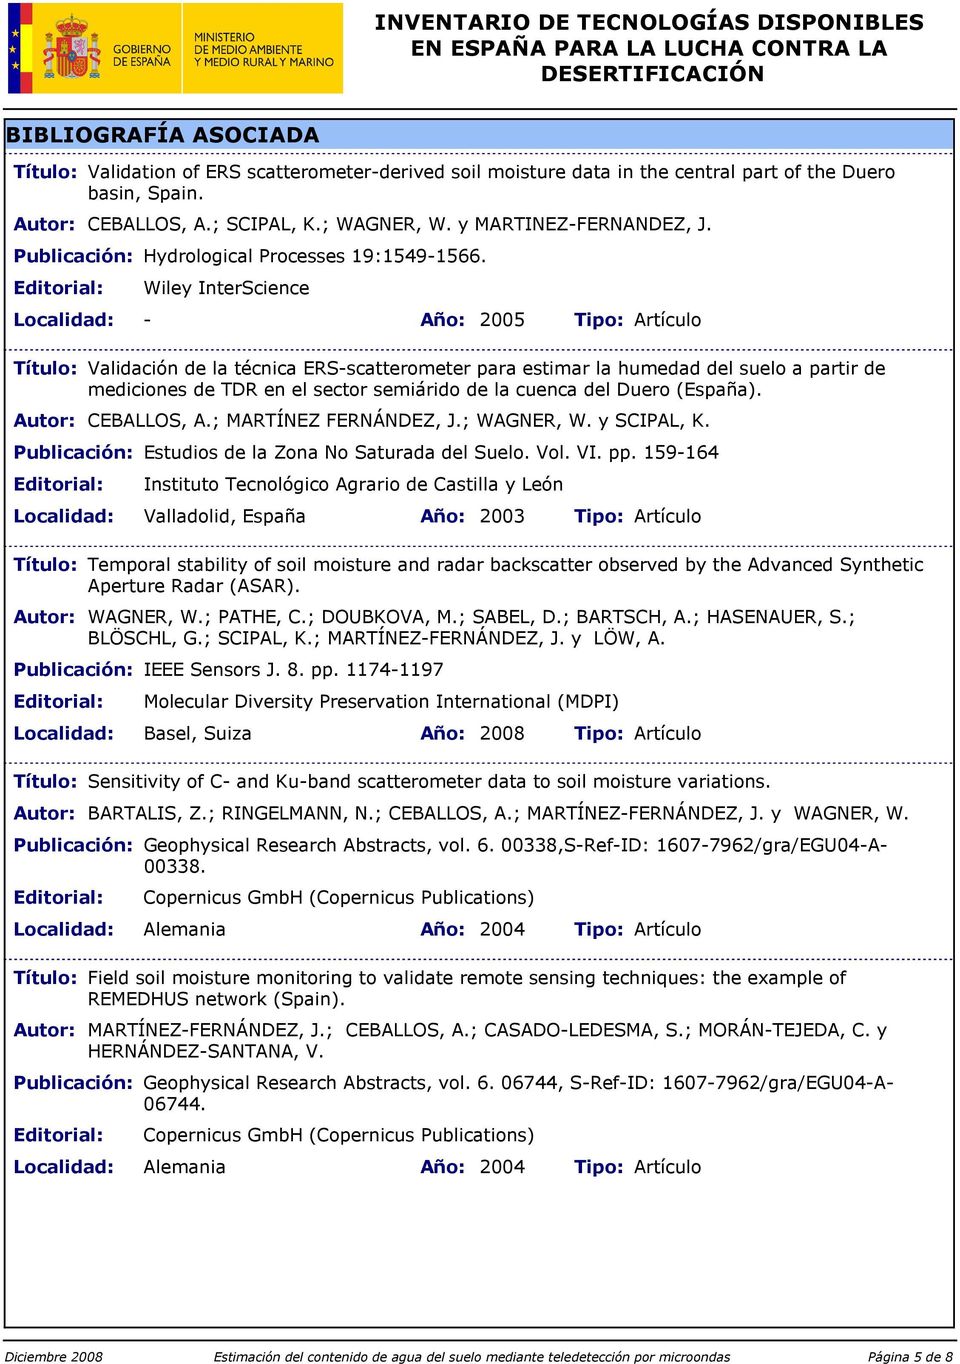 Wiley InterScience Localidad: - Año: 2005 Tipo: Artículo Validación de la técnica ERS-scatterometer para estimar la humedad del suelo a partir de mediciones de TDR en el sector semiárido de la cuenca